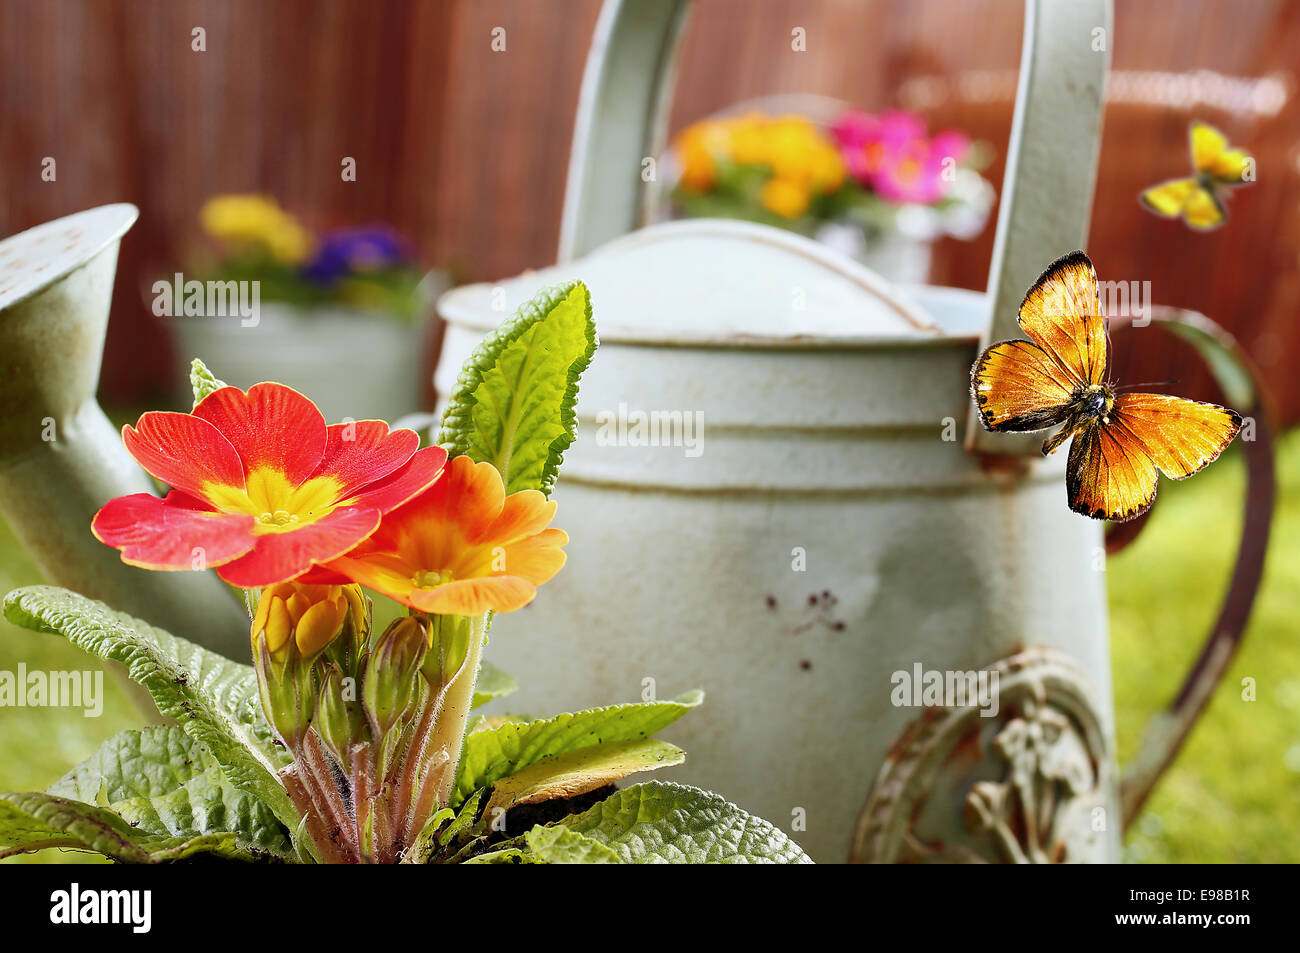 Imagen conceptual de un país jardín de verano con un viejo retro metal regadera, naranja intenso flores ornamentales y mariposas volando con poca dof Foto de stock